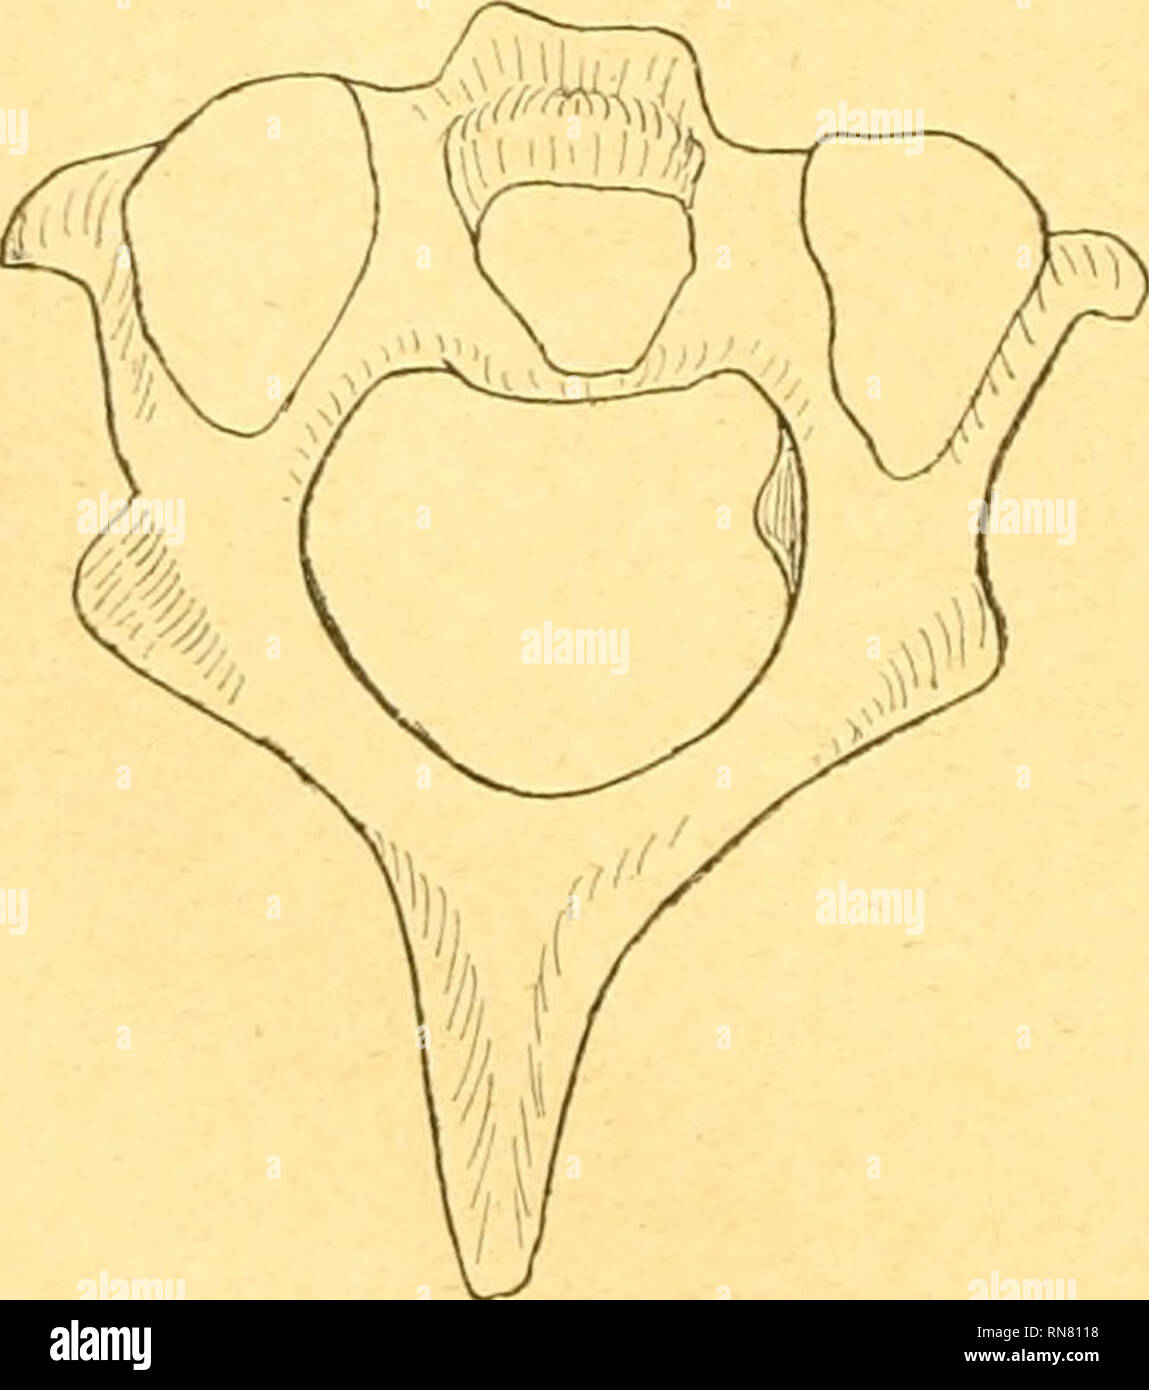 . Anatomischer Anzeiger. Anatomia, comparativo, Anatomia, comparativo. 1% Teil der Wirbelsäule stark in dorsaler BichtuDg abgebogen. Ihre Längsachse bildet mit der Senkrechten einen Winkel, der größer als beim Schimpanse, kleiner als beim gibbone erscheint. Besondere Erwähnung verdient ein Befund bei einem ausgewachse- nen esemplare von Cercopithecus callitrichus (?). Hier wies der Dom des 3.und 4. Un Halswirbels meinem Caudalrand in geringer Ent- fernung von der Spitze jederseits ein kleines Höckerchen auf, das un ähnliche Befunde am Epistropheus erinnert und oltenbar mit dem Ansatz eines Muskel Foto Stock